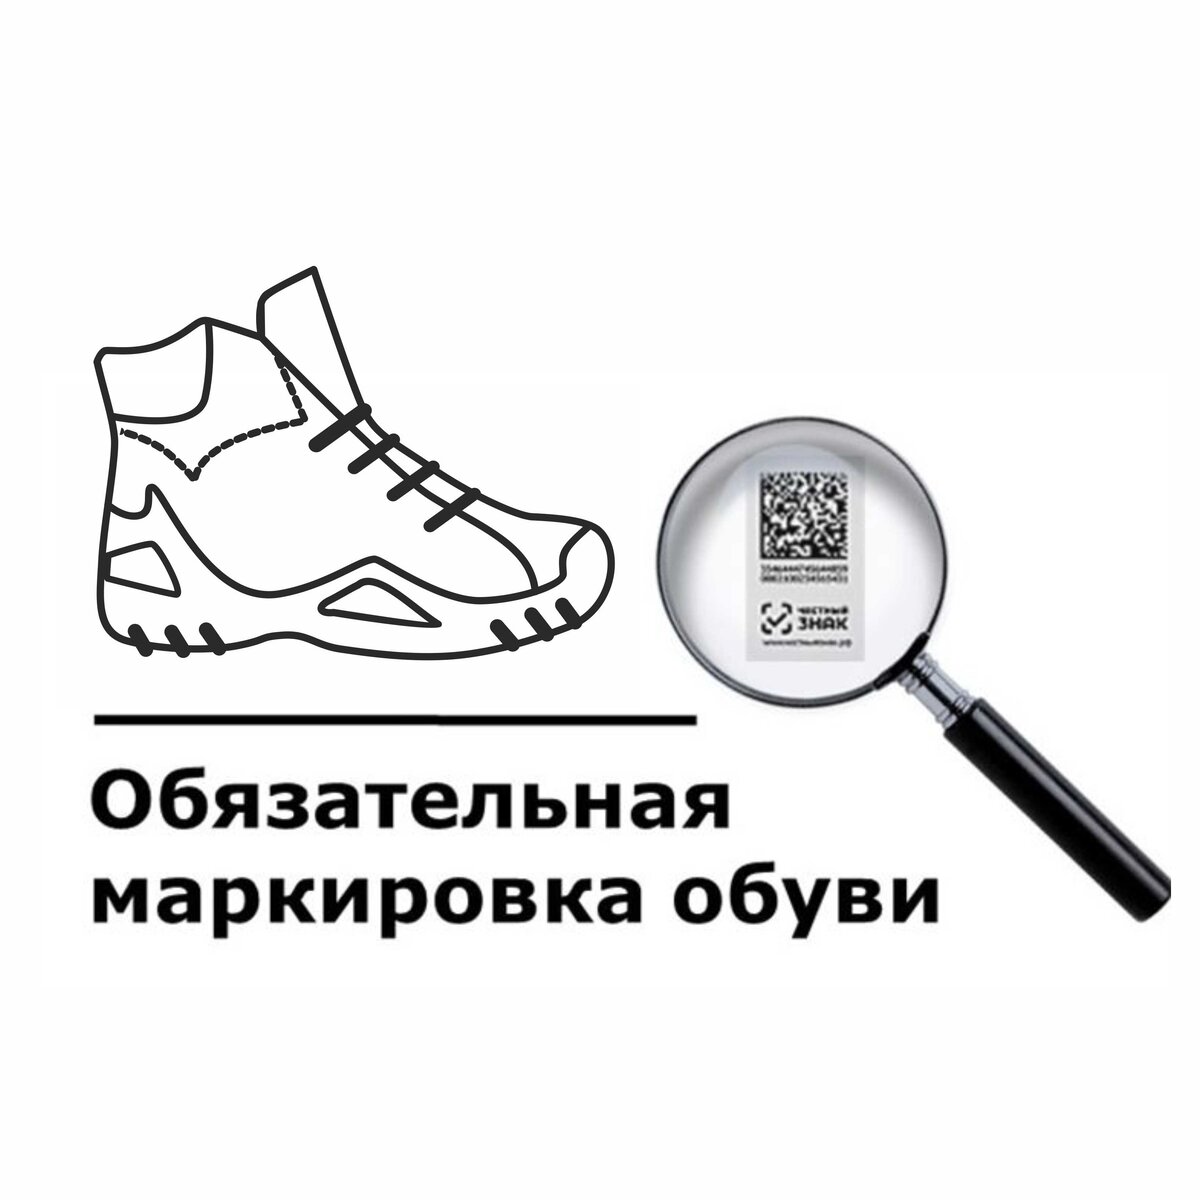 Обувь знак